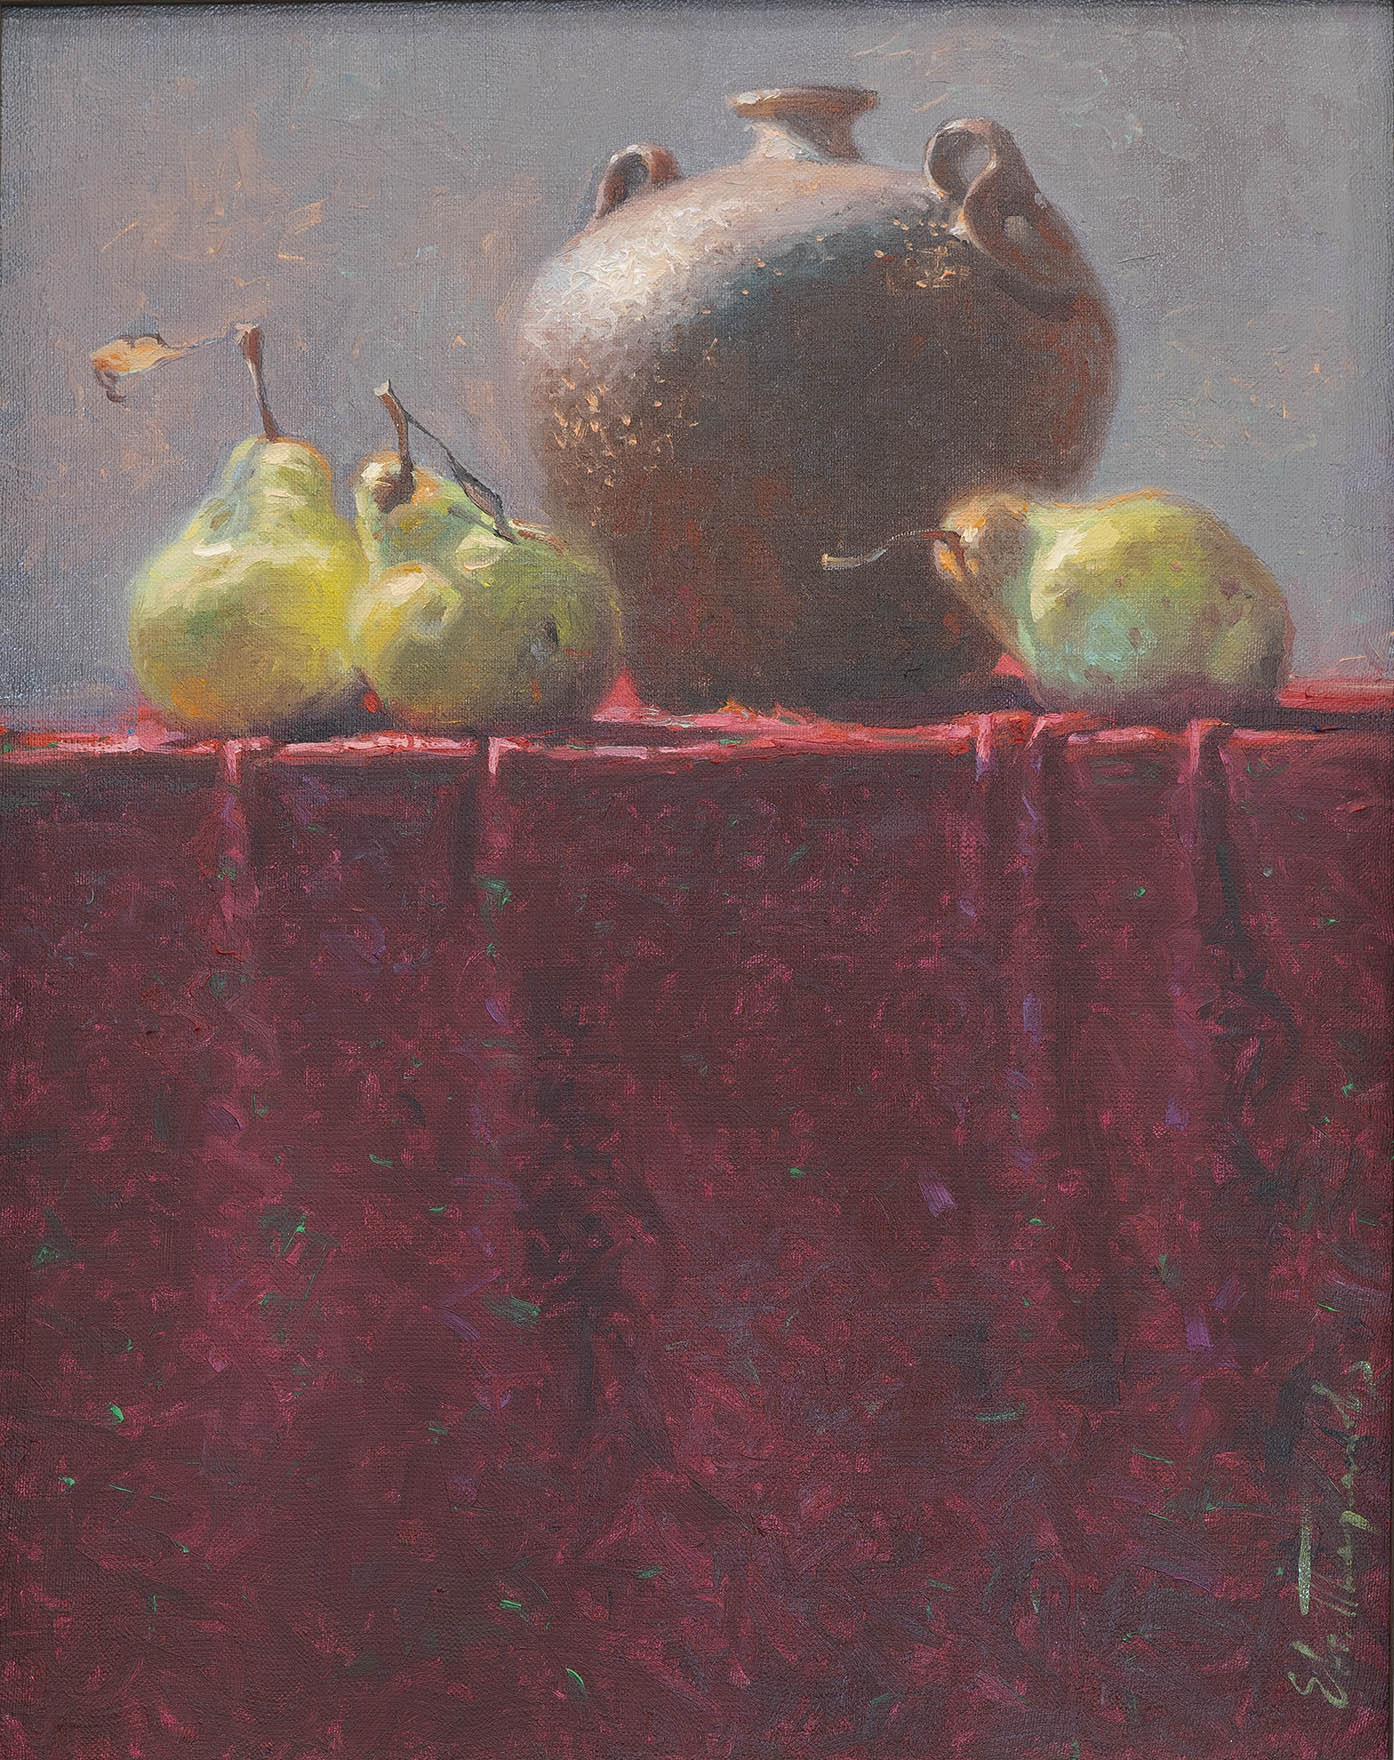 Three on One - 1, Eugene Terekhov, Buy the painting Oil